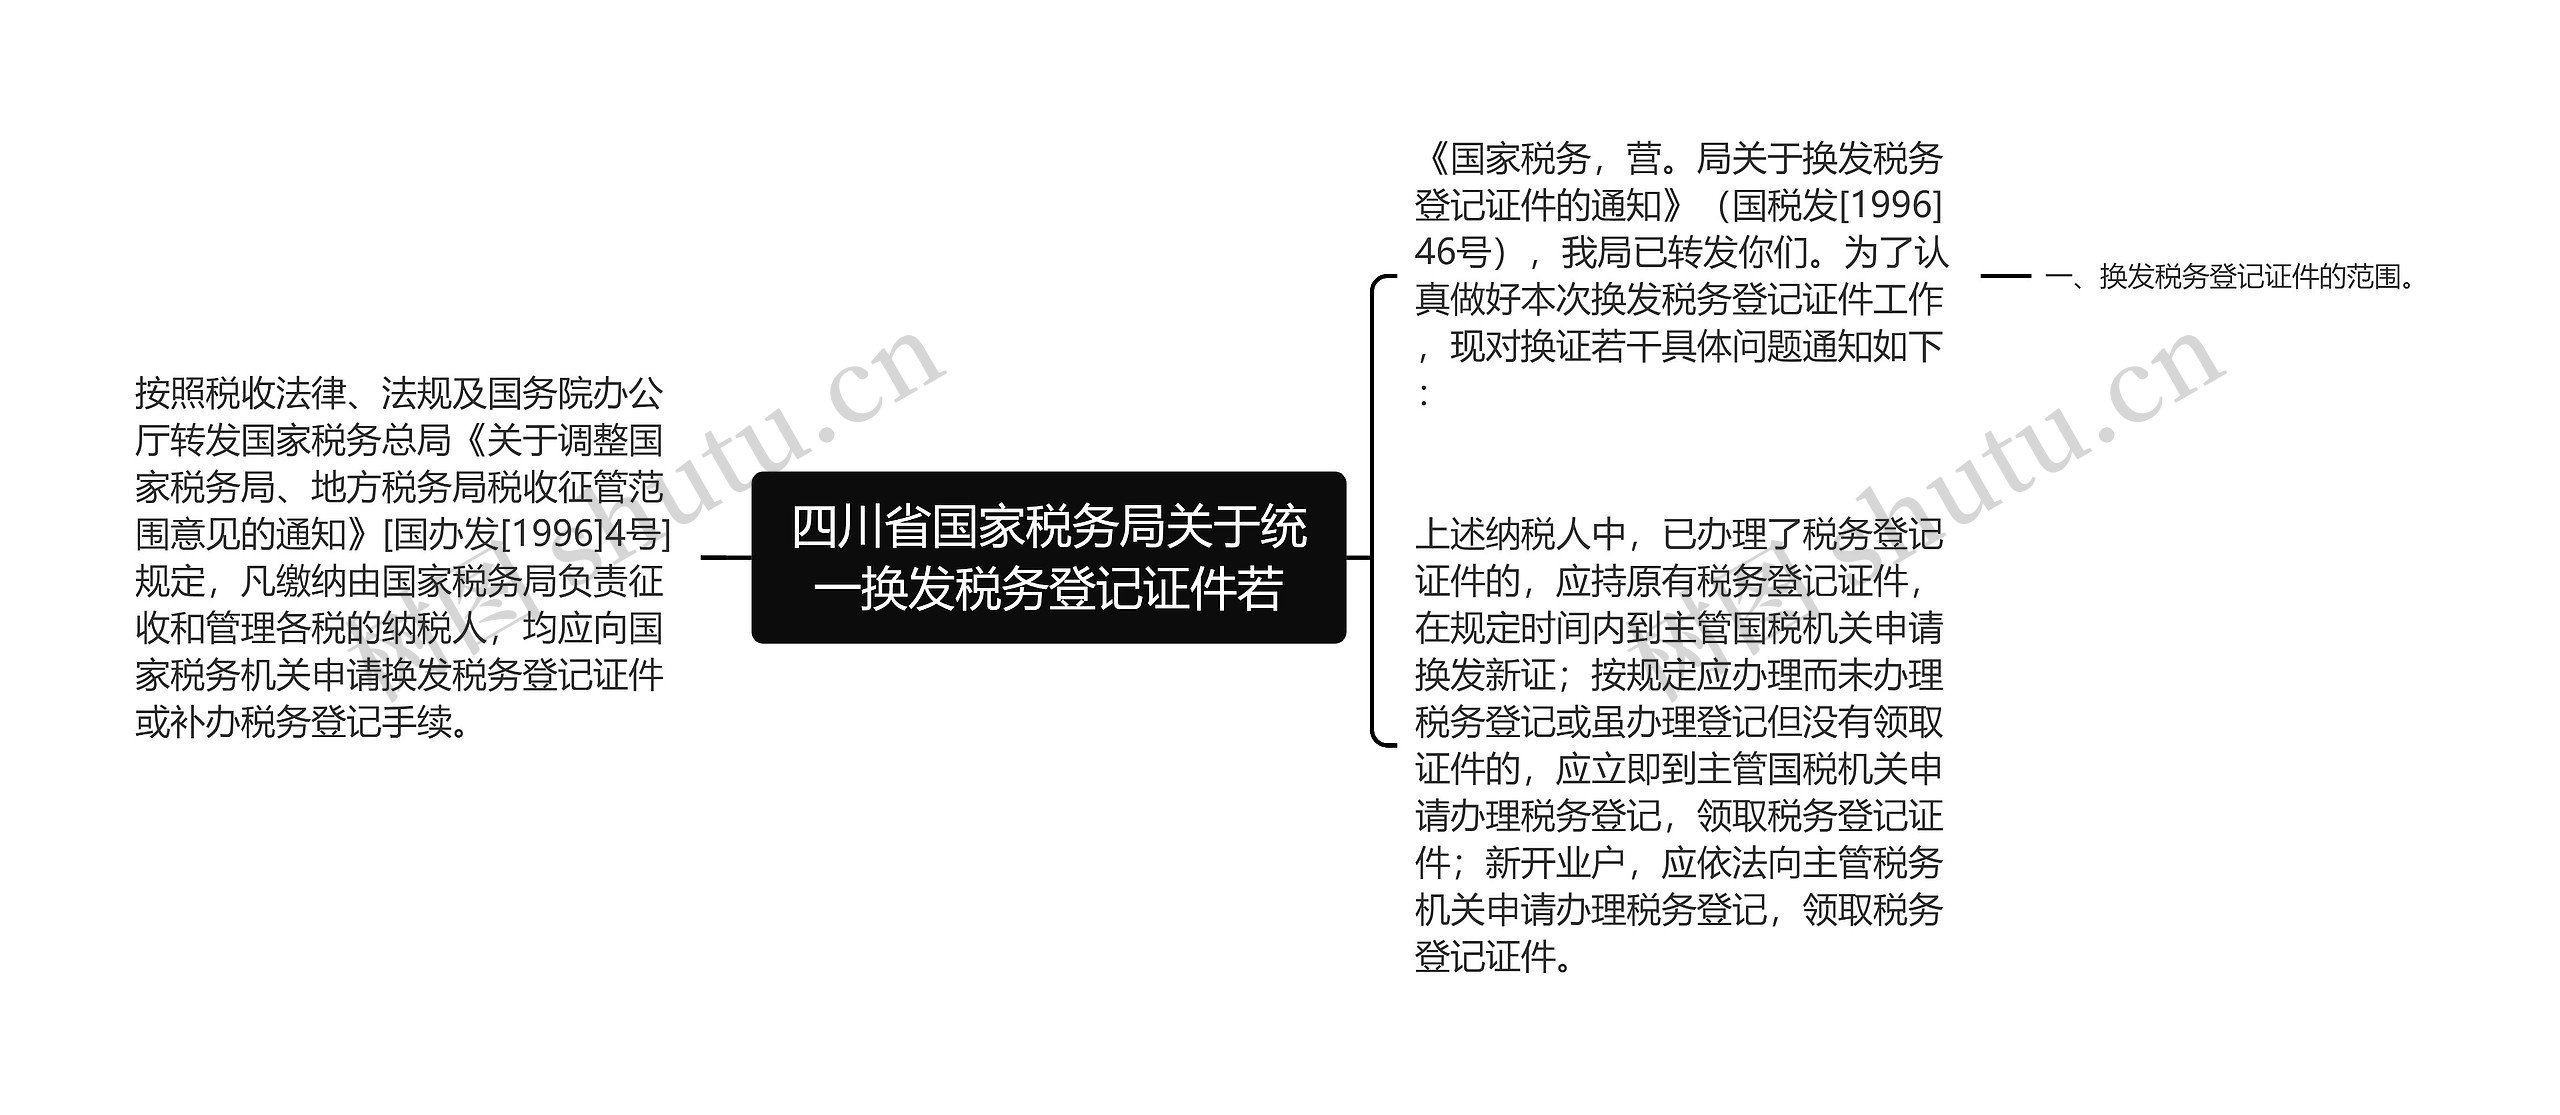 四川省国家税务局关于统一换发税务登记证件若思维导图